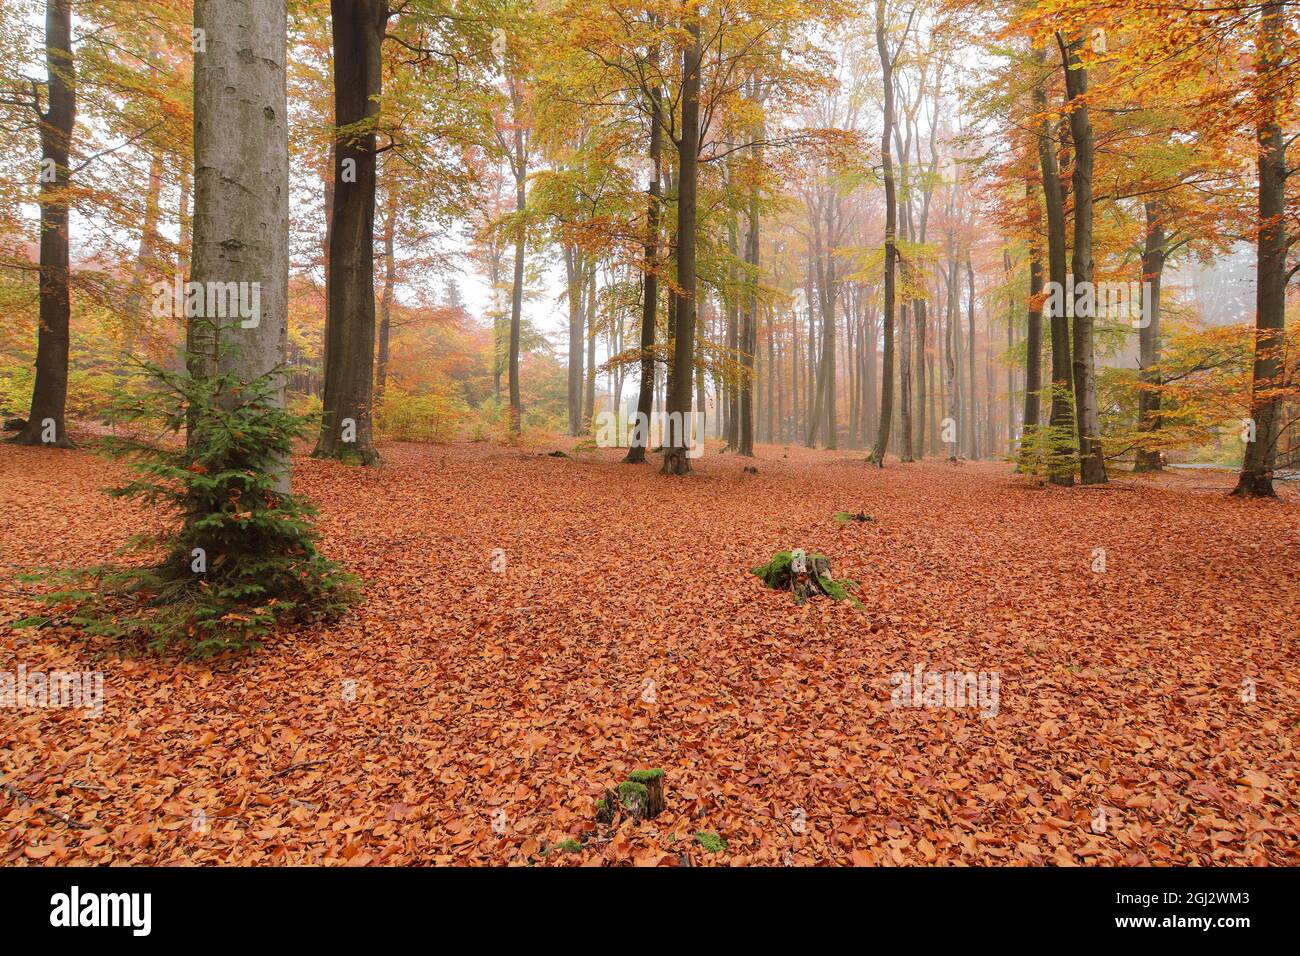 Forêt de hêtre d'automne avec objectif grand angle, Cerne Voderady, Voderady Beechwood, République tchèque Banque D'Images